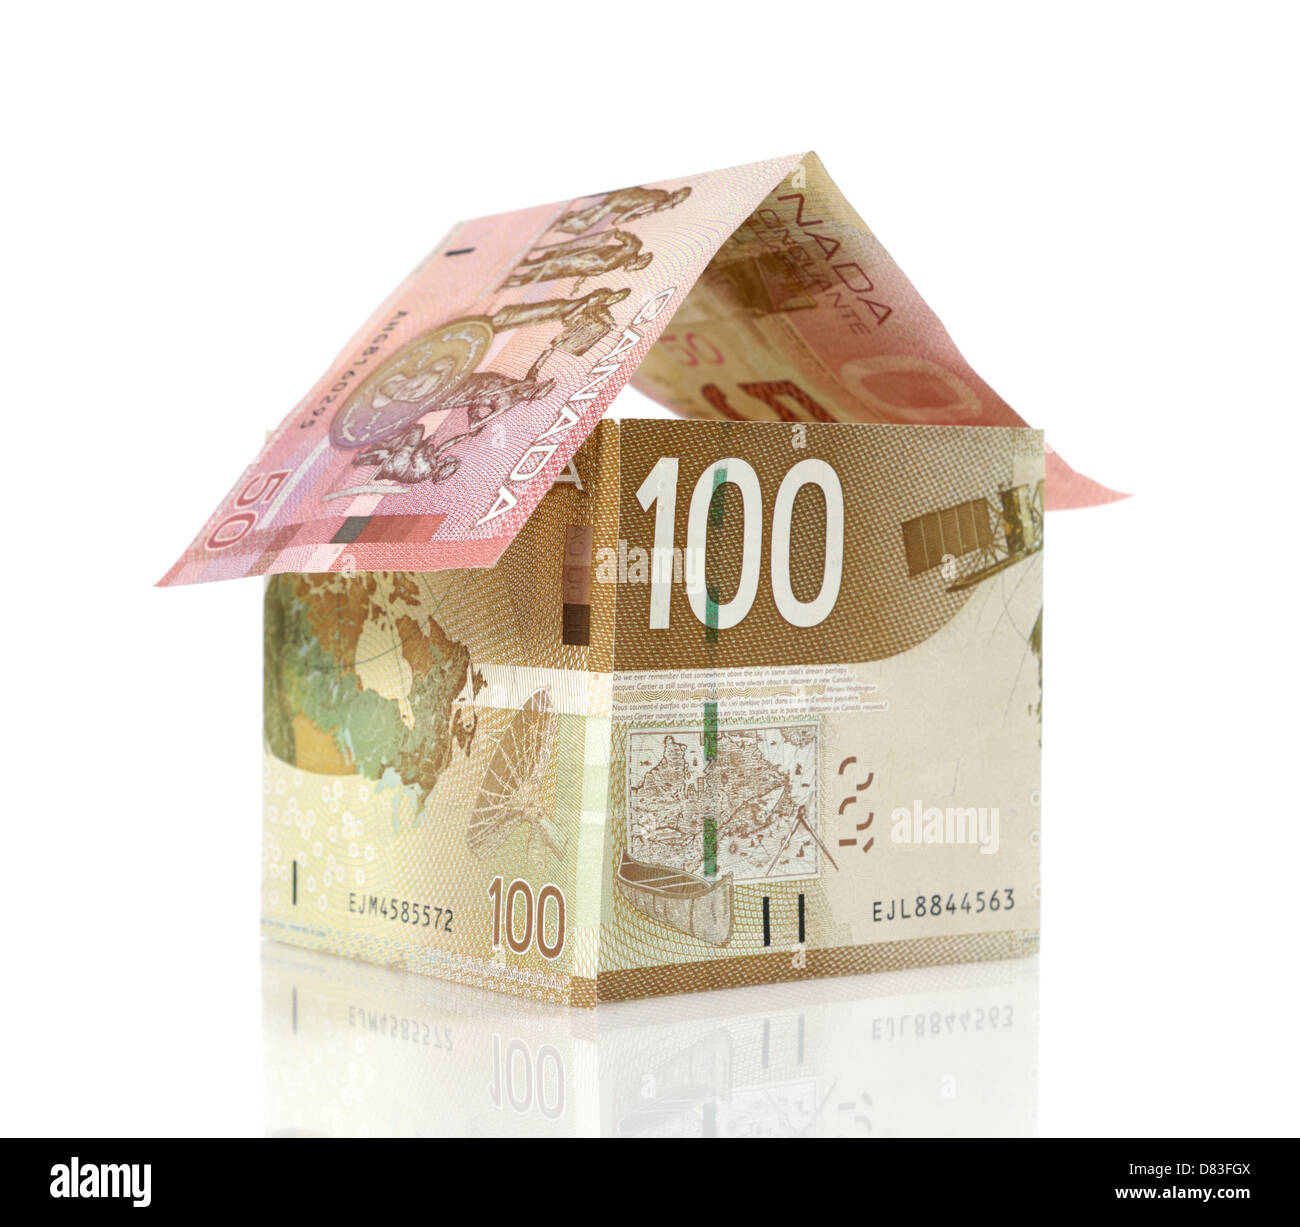 Modell eines Hauses aus kanadischen Dollar Rechnungen Nahaufnahme gemacht, Hypotheken, Investitionen, Sachversicherungen, Grundsteuer, Banking-Konzept Stockfoto